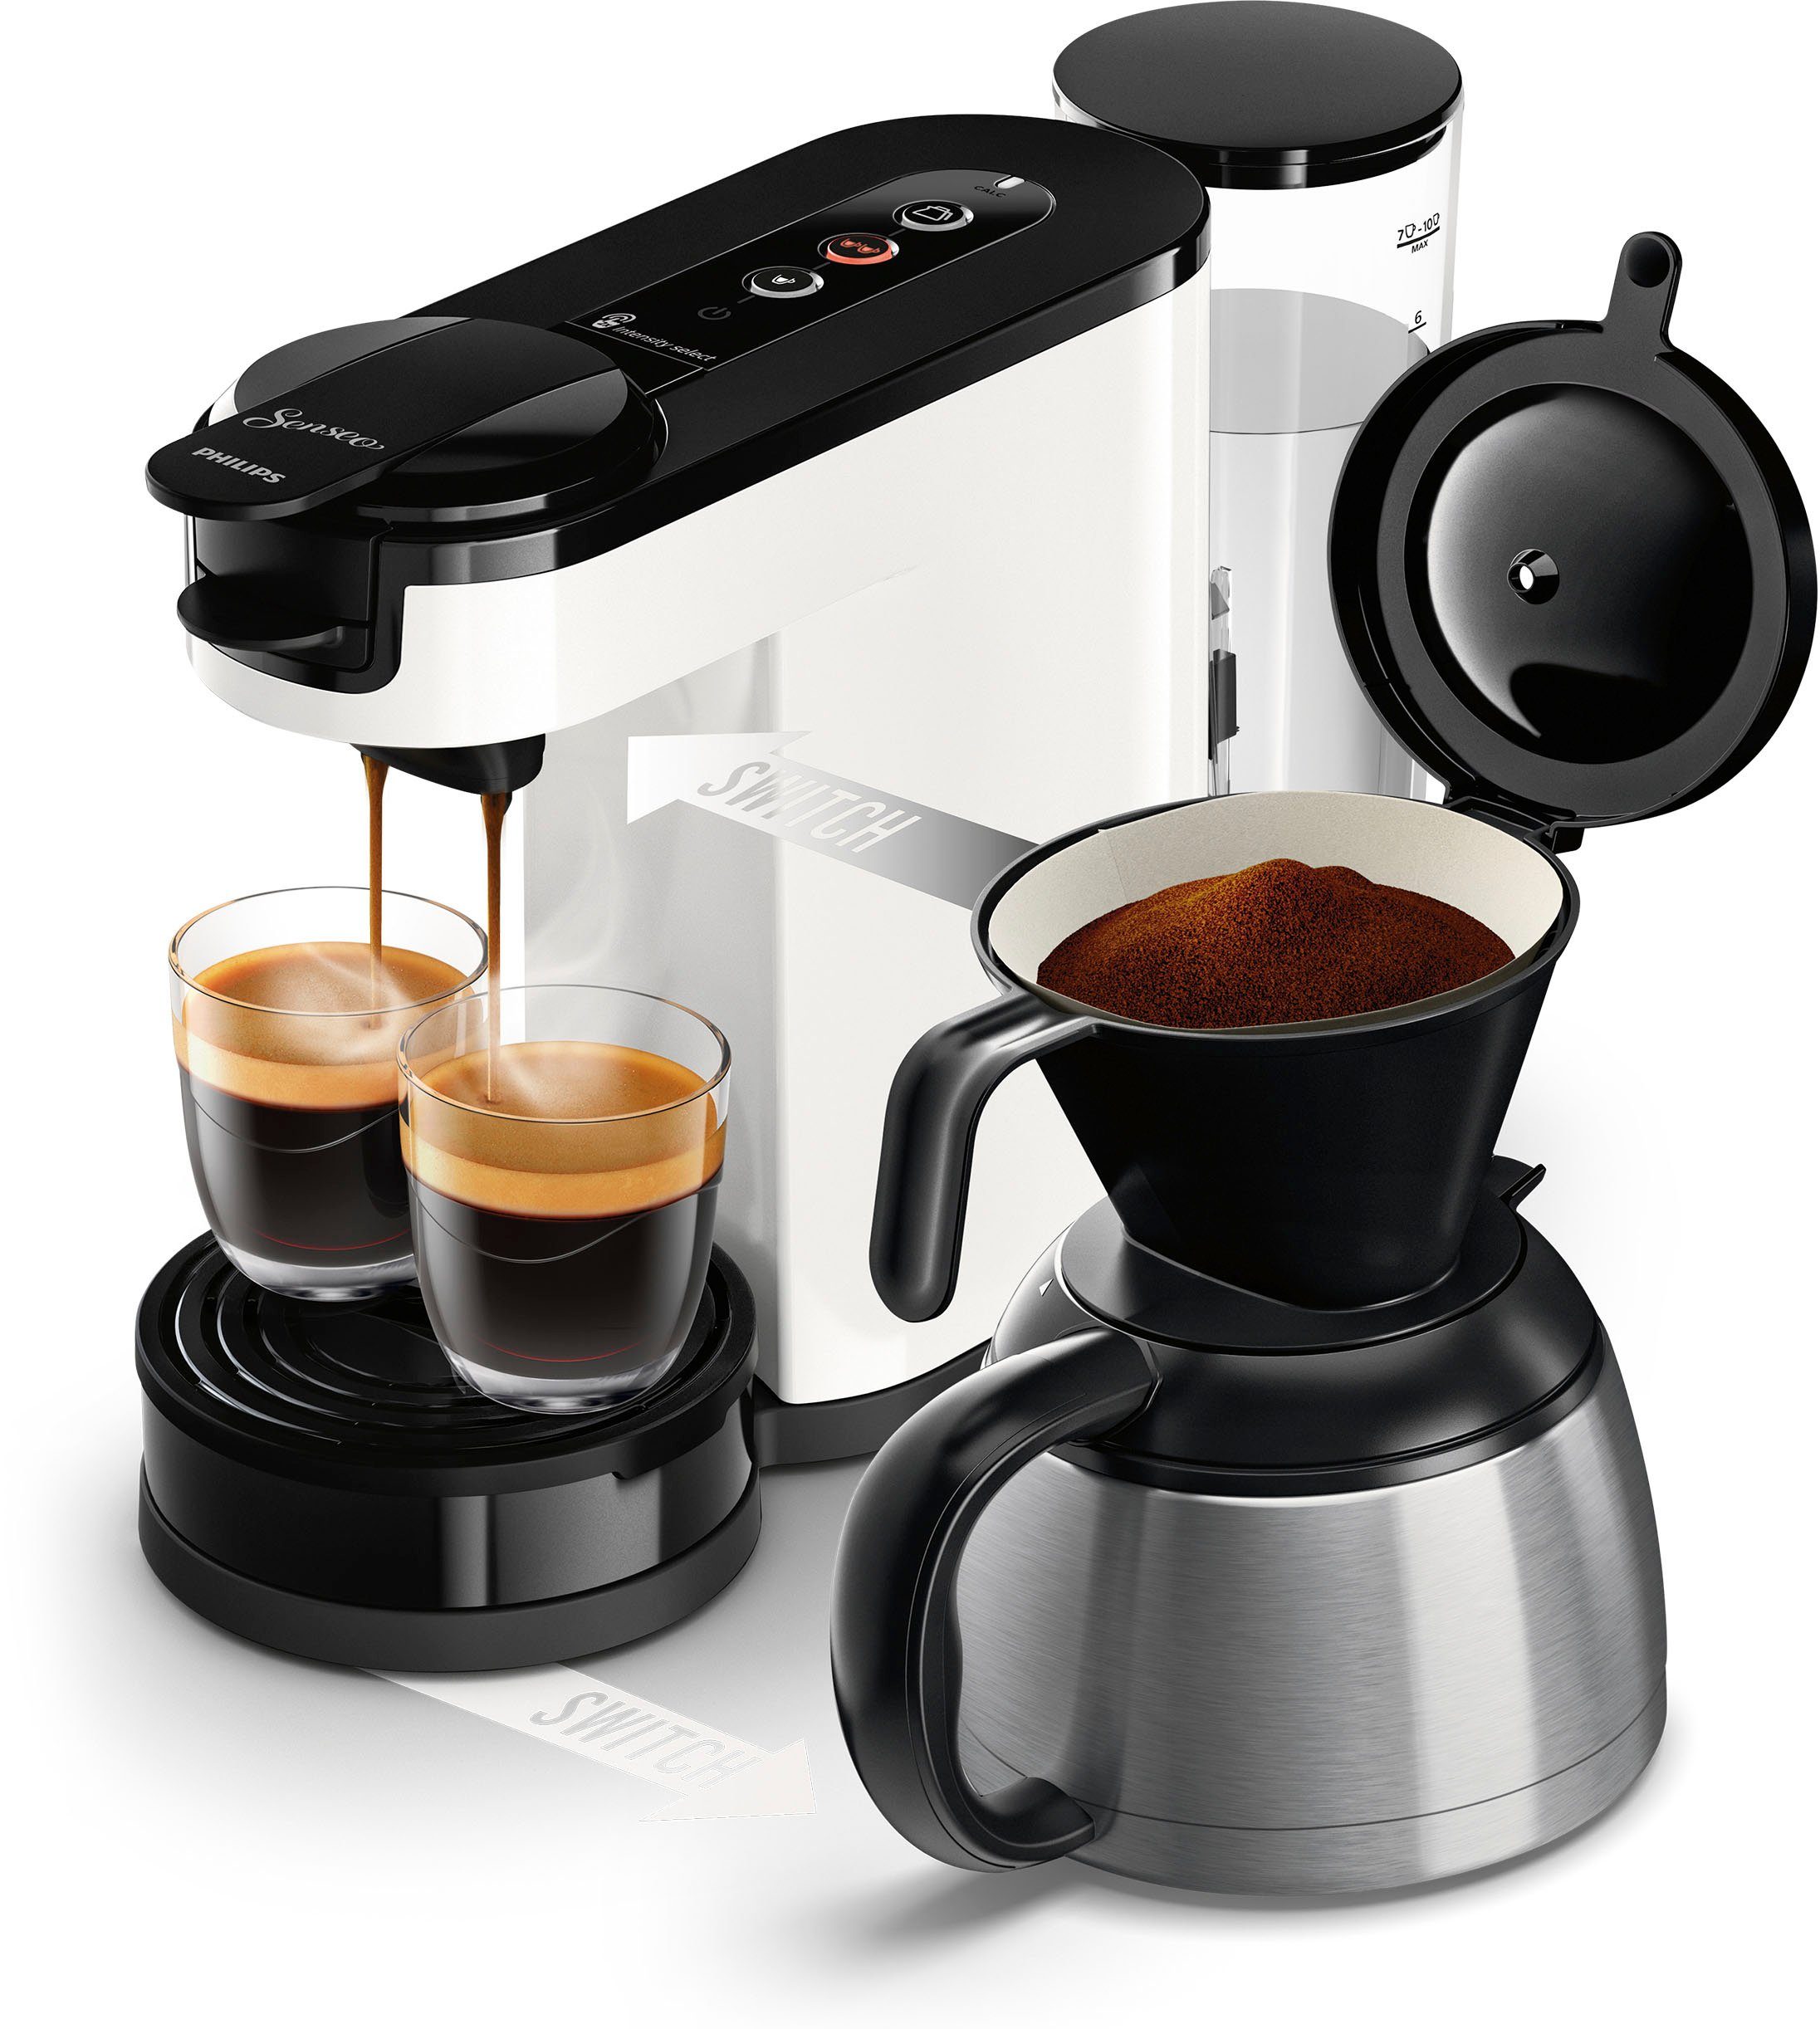 Philips Senseo Kaffeepadmaschine Switch Wert € HD6592/04, 1l von im Kaffeekanne, inkl. UVP 9,90 Kaffeepaddose